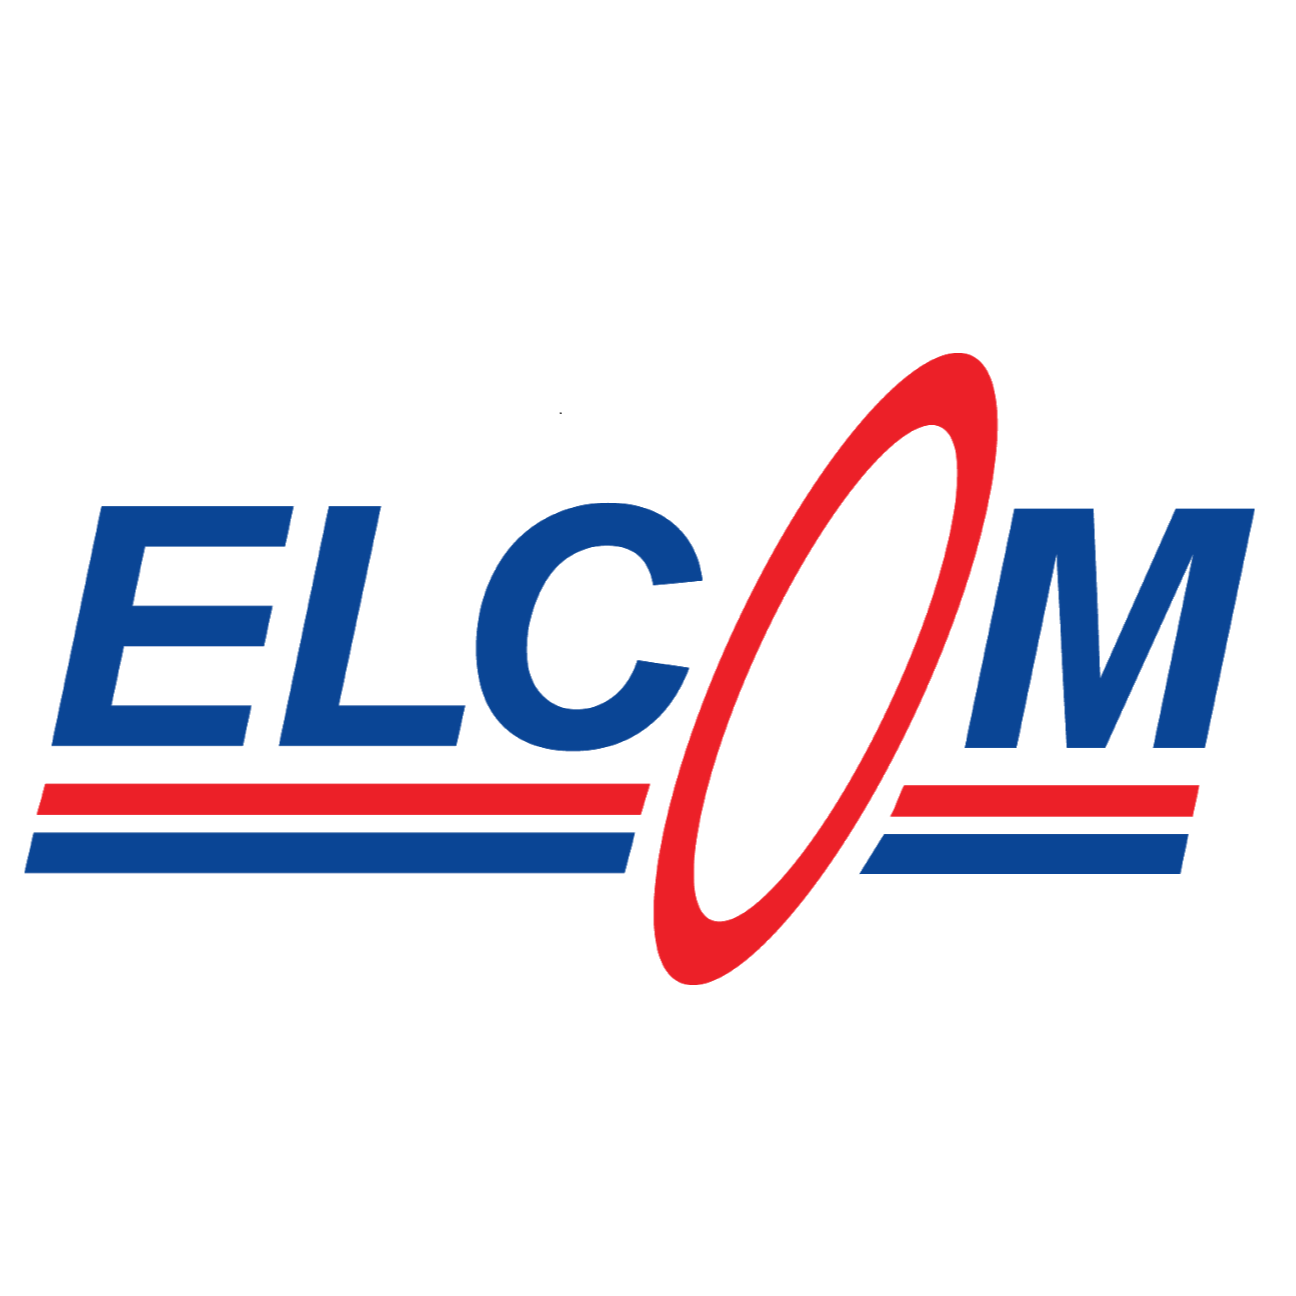 Elcom Run